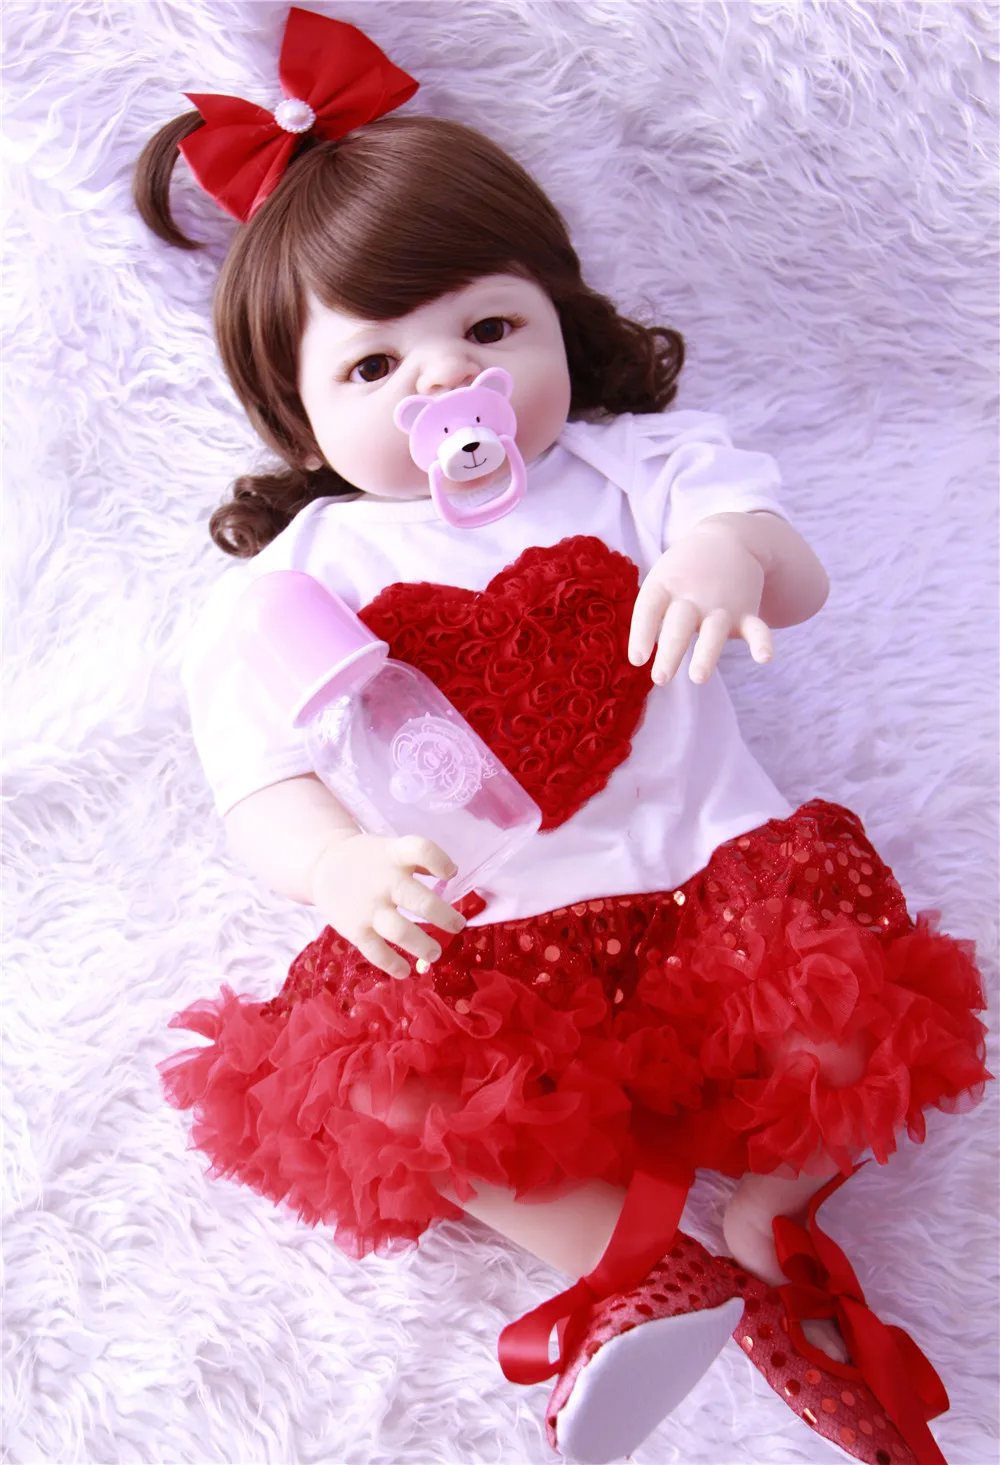 Горячая пупсик реалистичный приклеенный парик Bebes Reborn кукла 22 дюймов полный силиконовый винил детская игрушка для девочек рождественские подарки